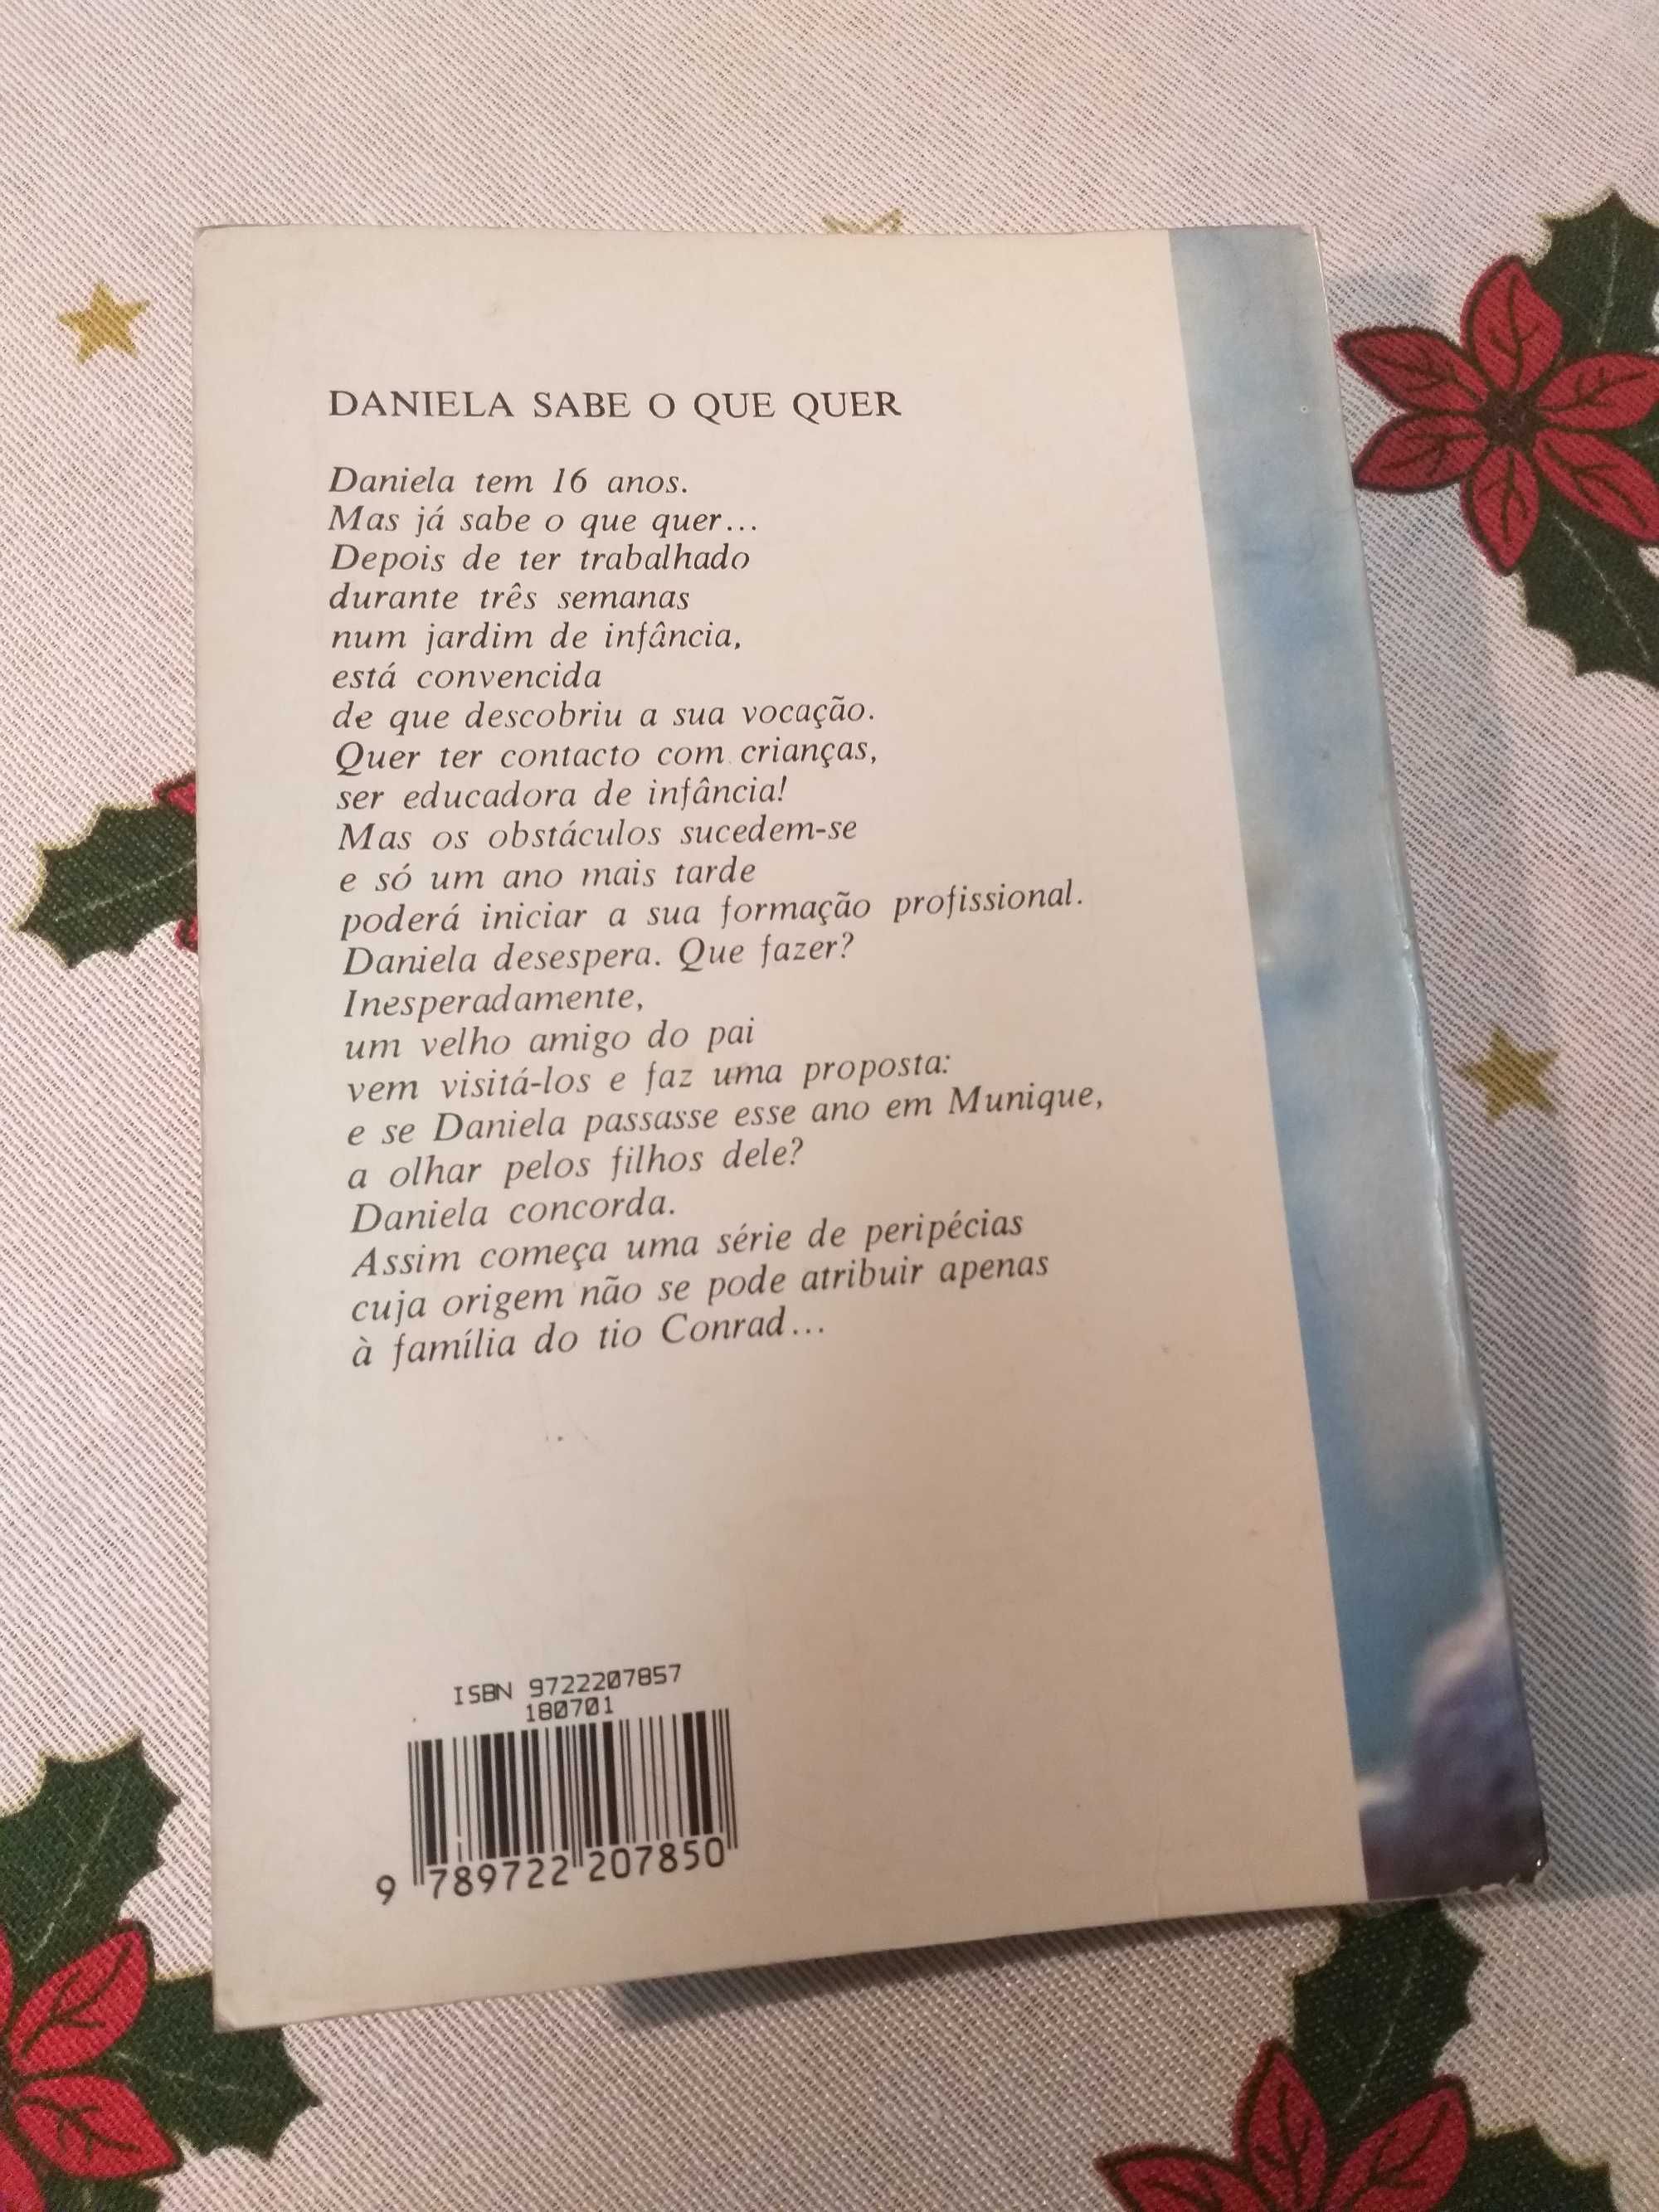 Livro "Daniela Sabe o Que Quer" de Barbara Schwindt